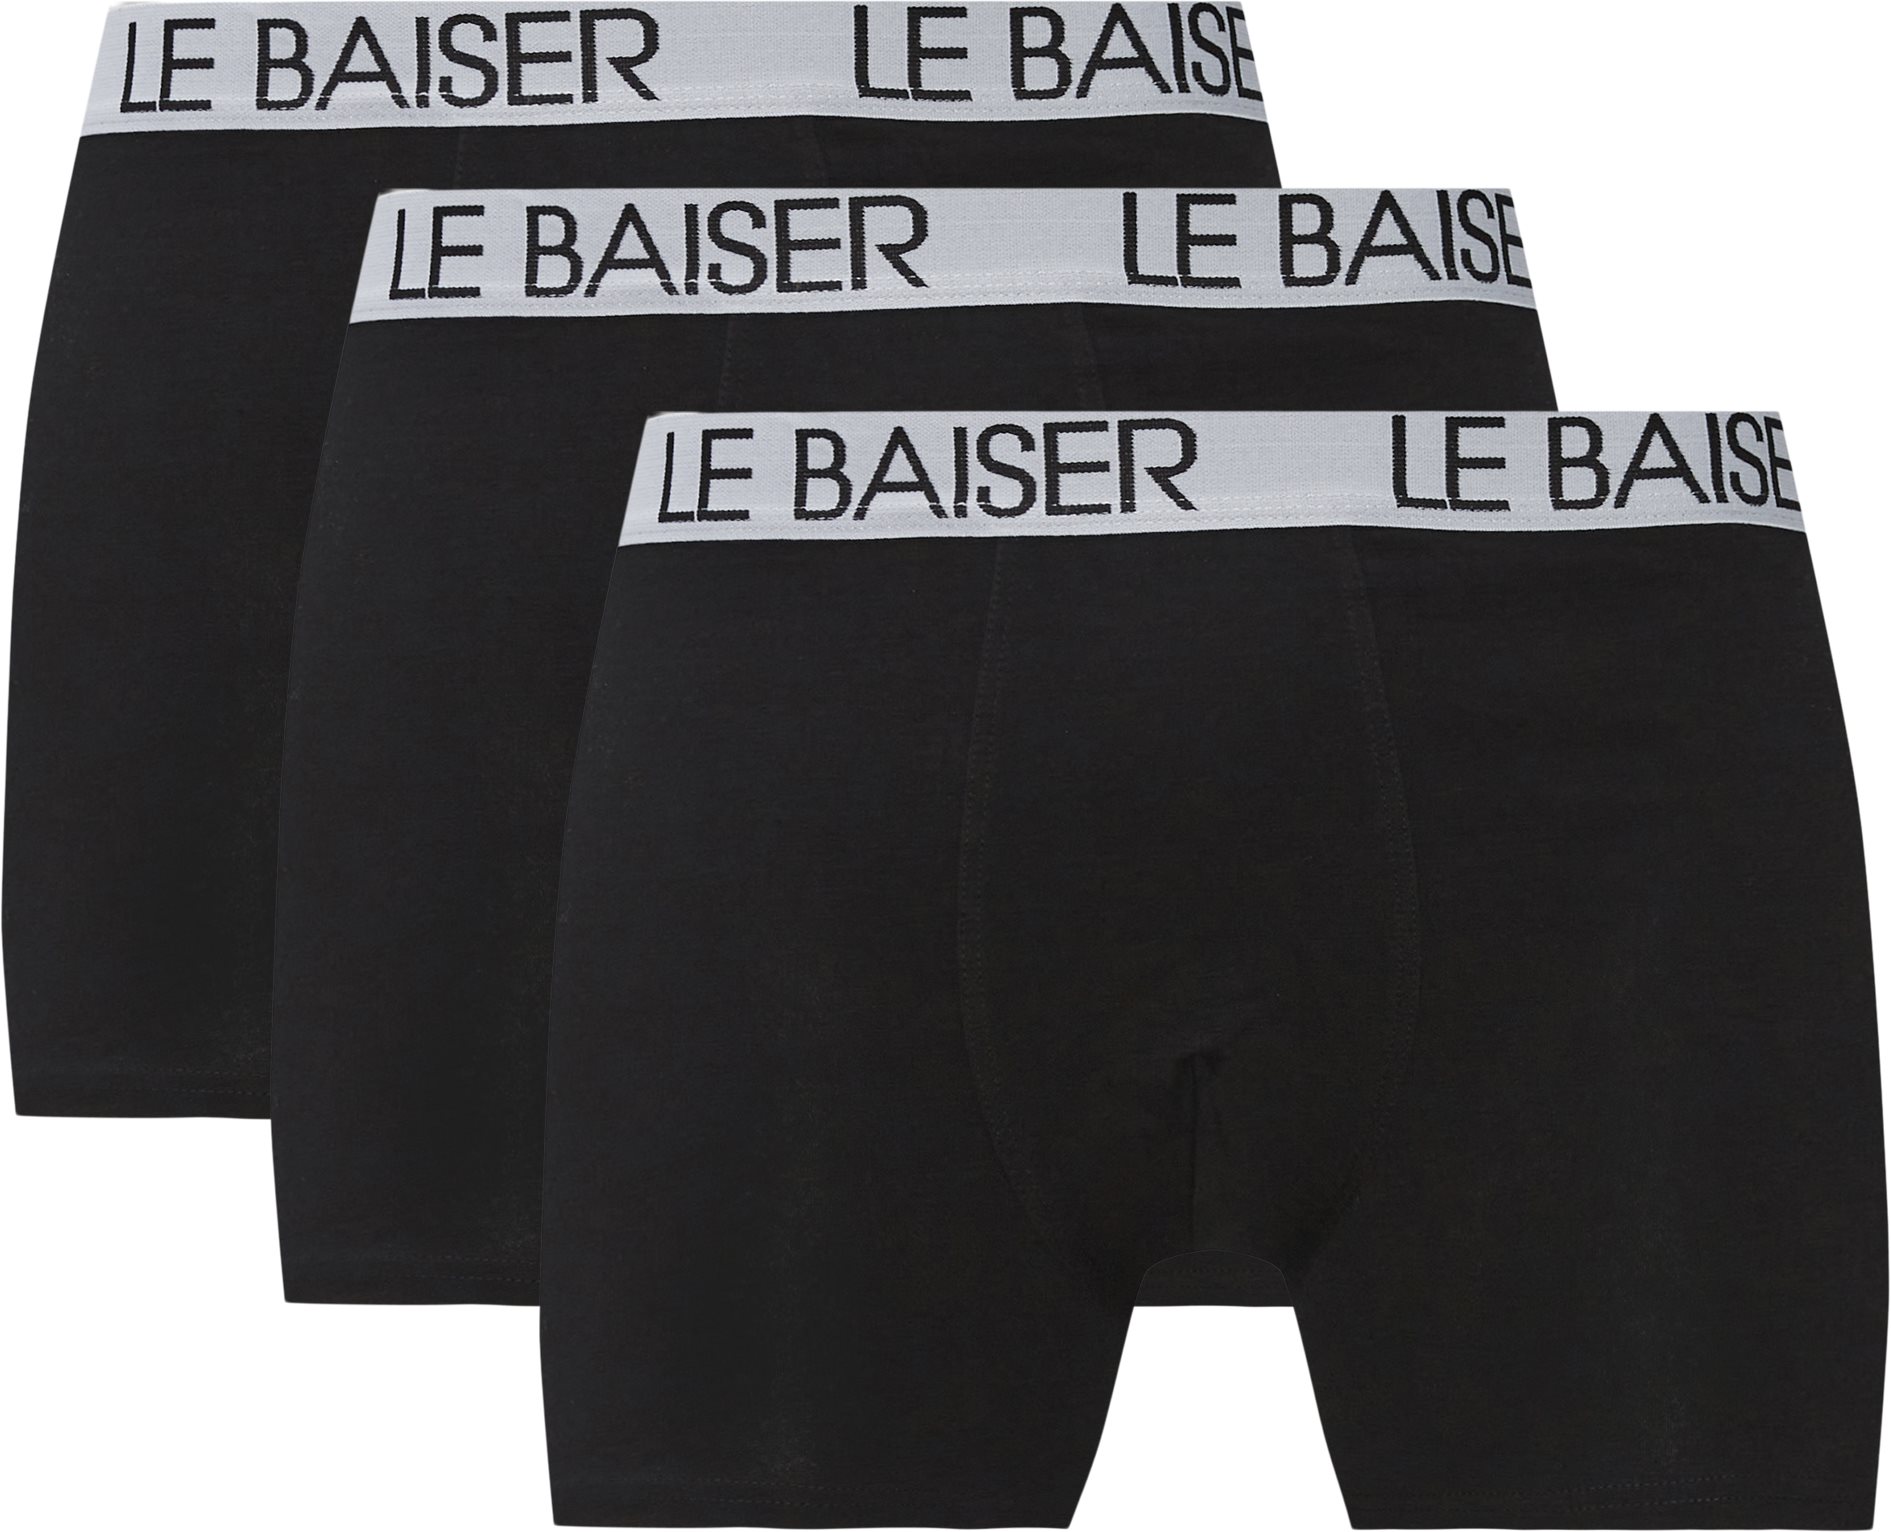 Le Baiser Underkläder TIGHTS 3 PACK 88020-1101 Svart